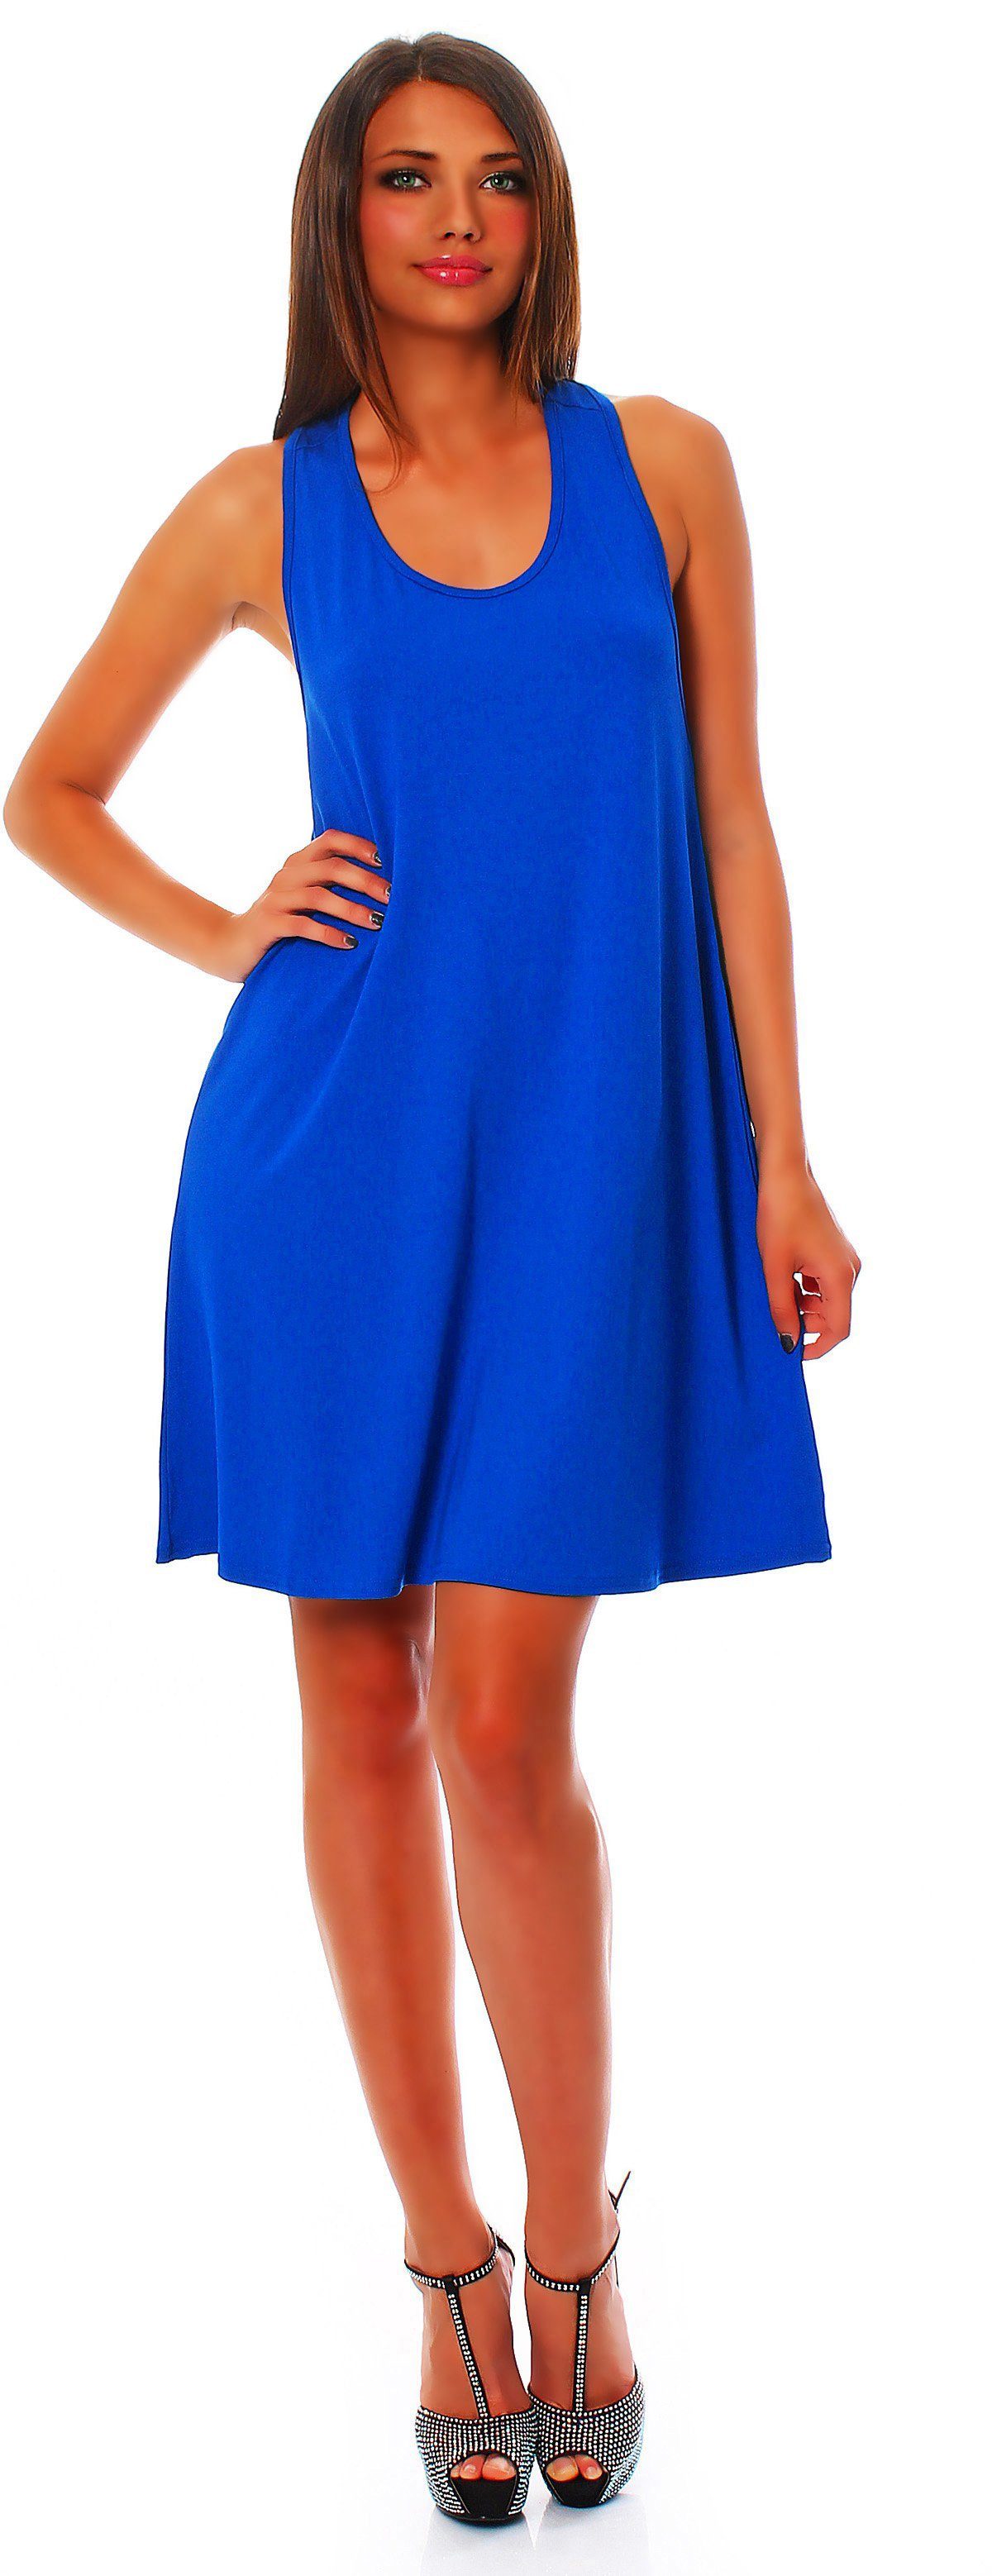 Schlaufen Minikleid Sommerkleid schulterfrei Blau mit überkreuzten Mississhop